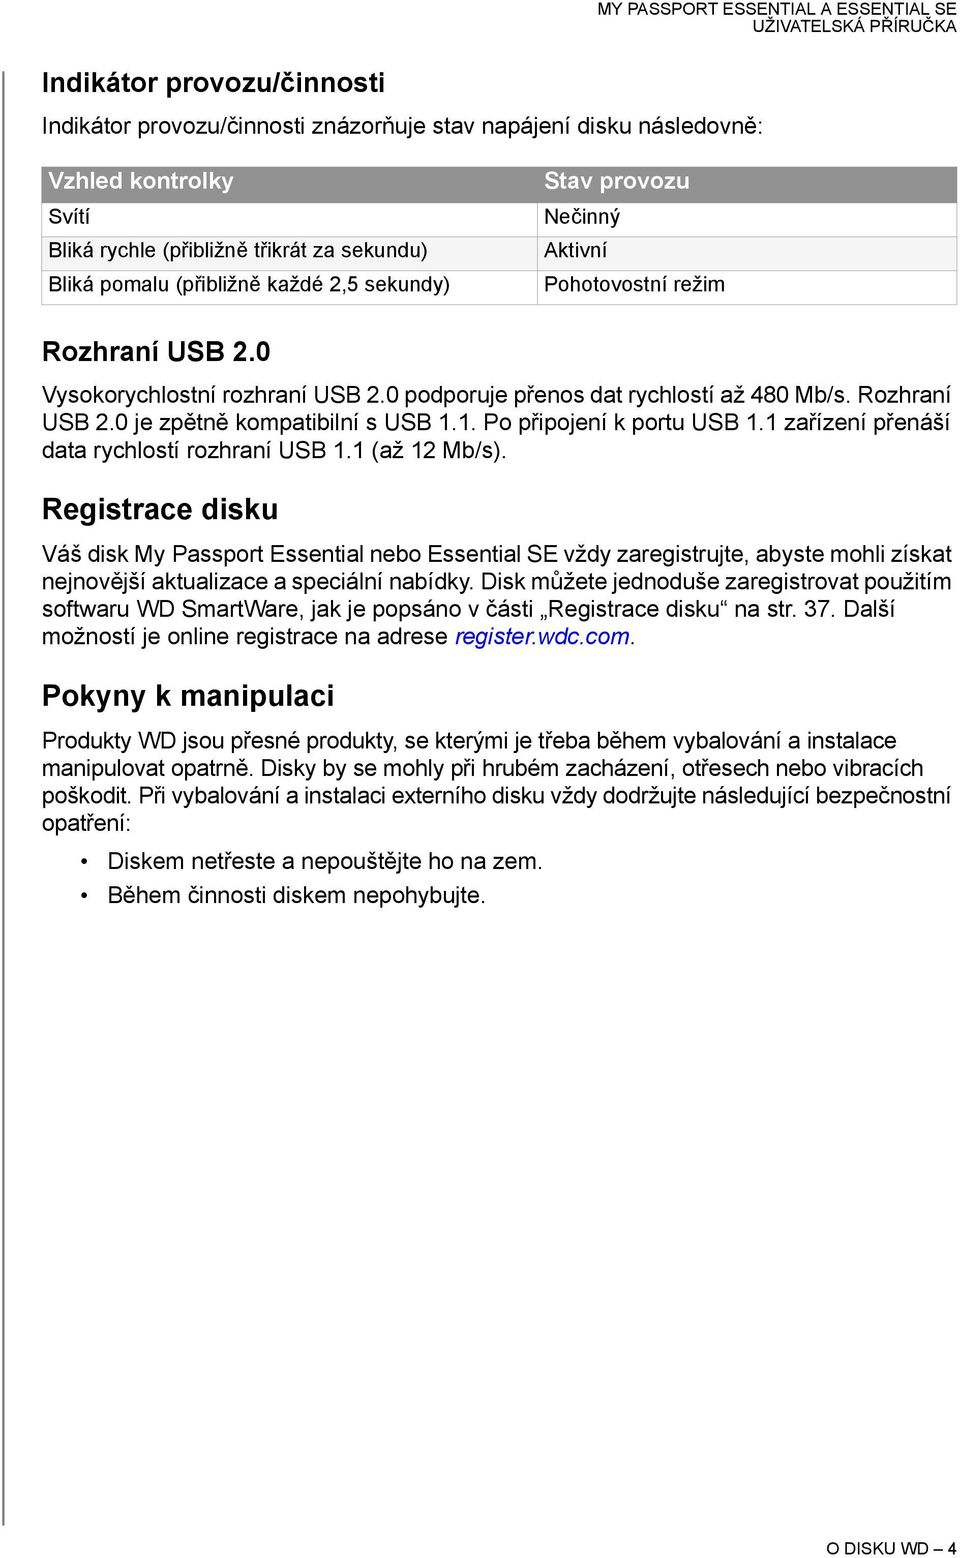 1. Po připojení k portu USB 1.1 zařízení přenáší data rychlostí rozhraní USB 1.1 (až 12 Mb/s).